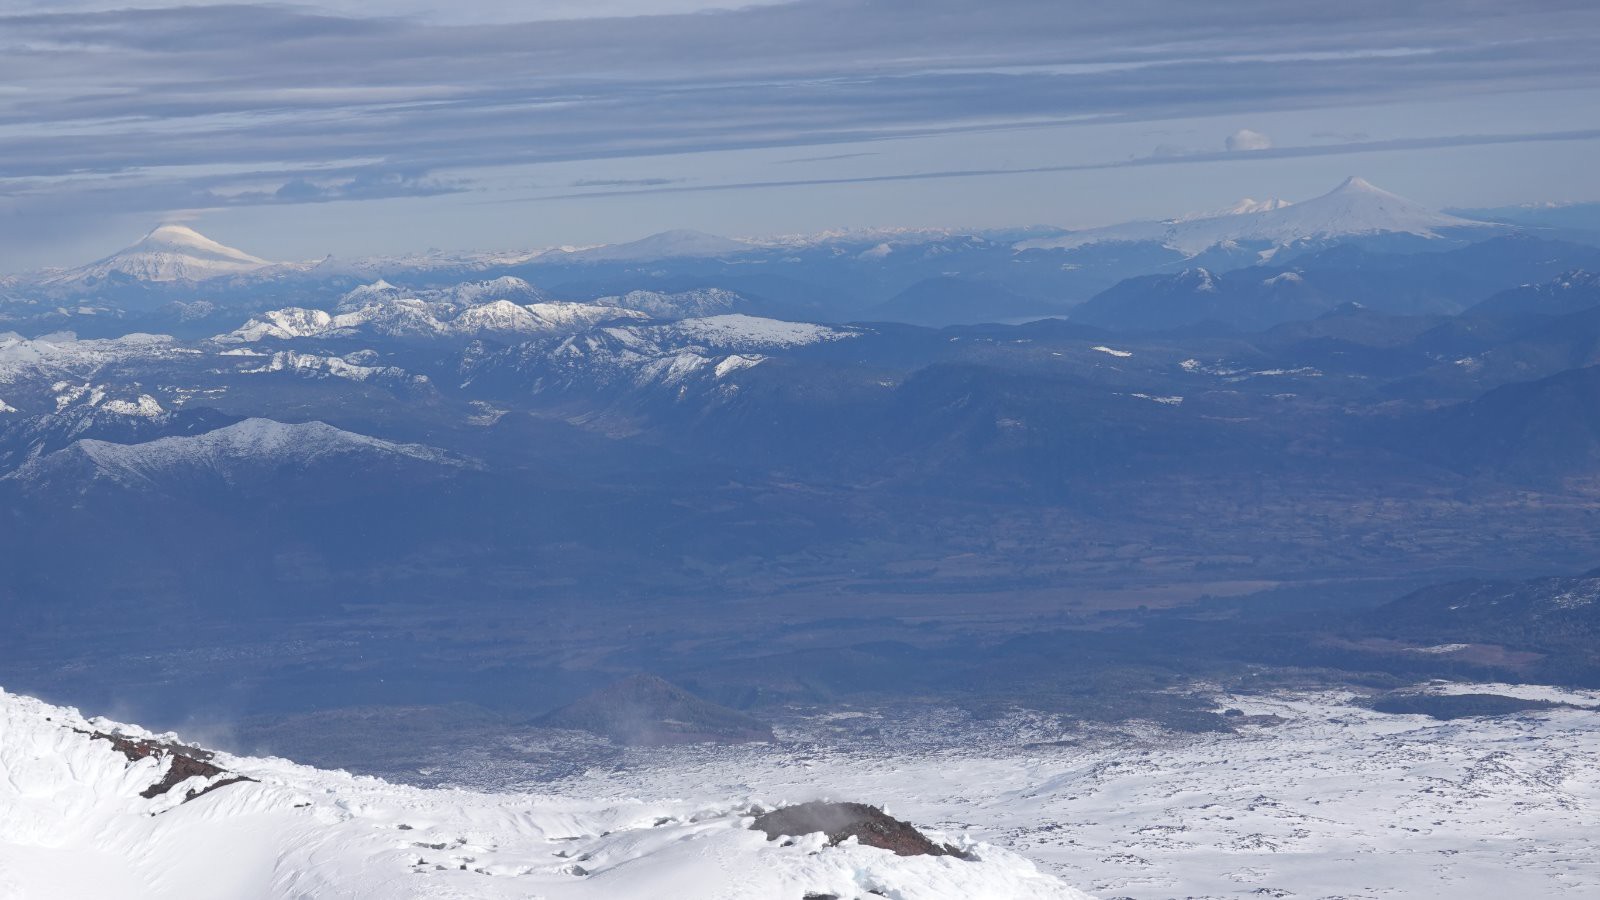 Panorama vers le Sud et les volcans Lanin, Quetrupillan, Mocho, Choshuenco et Villarica